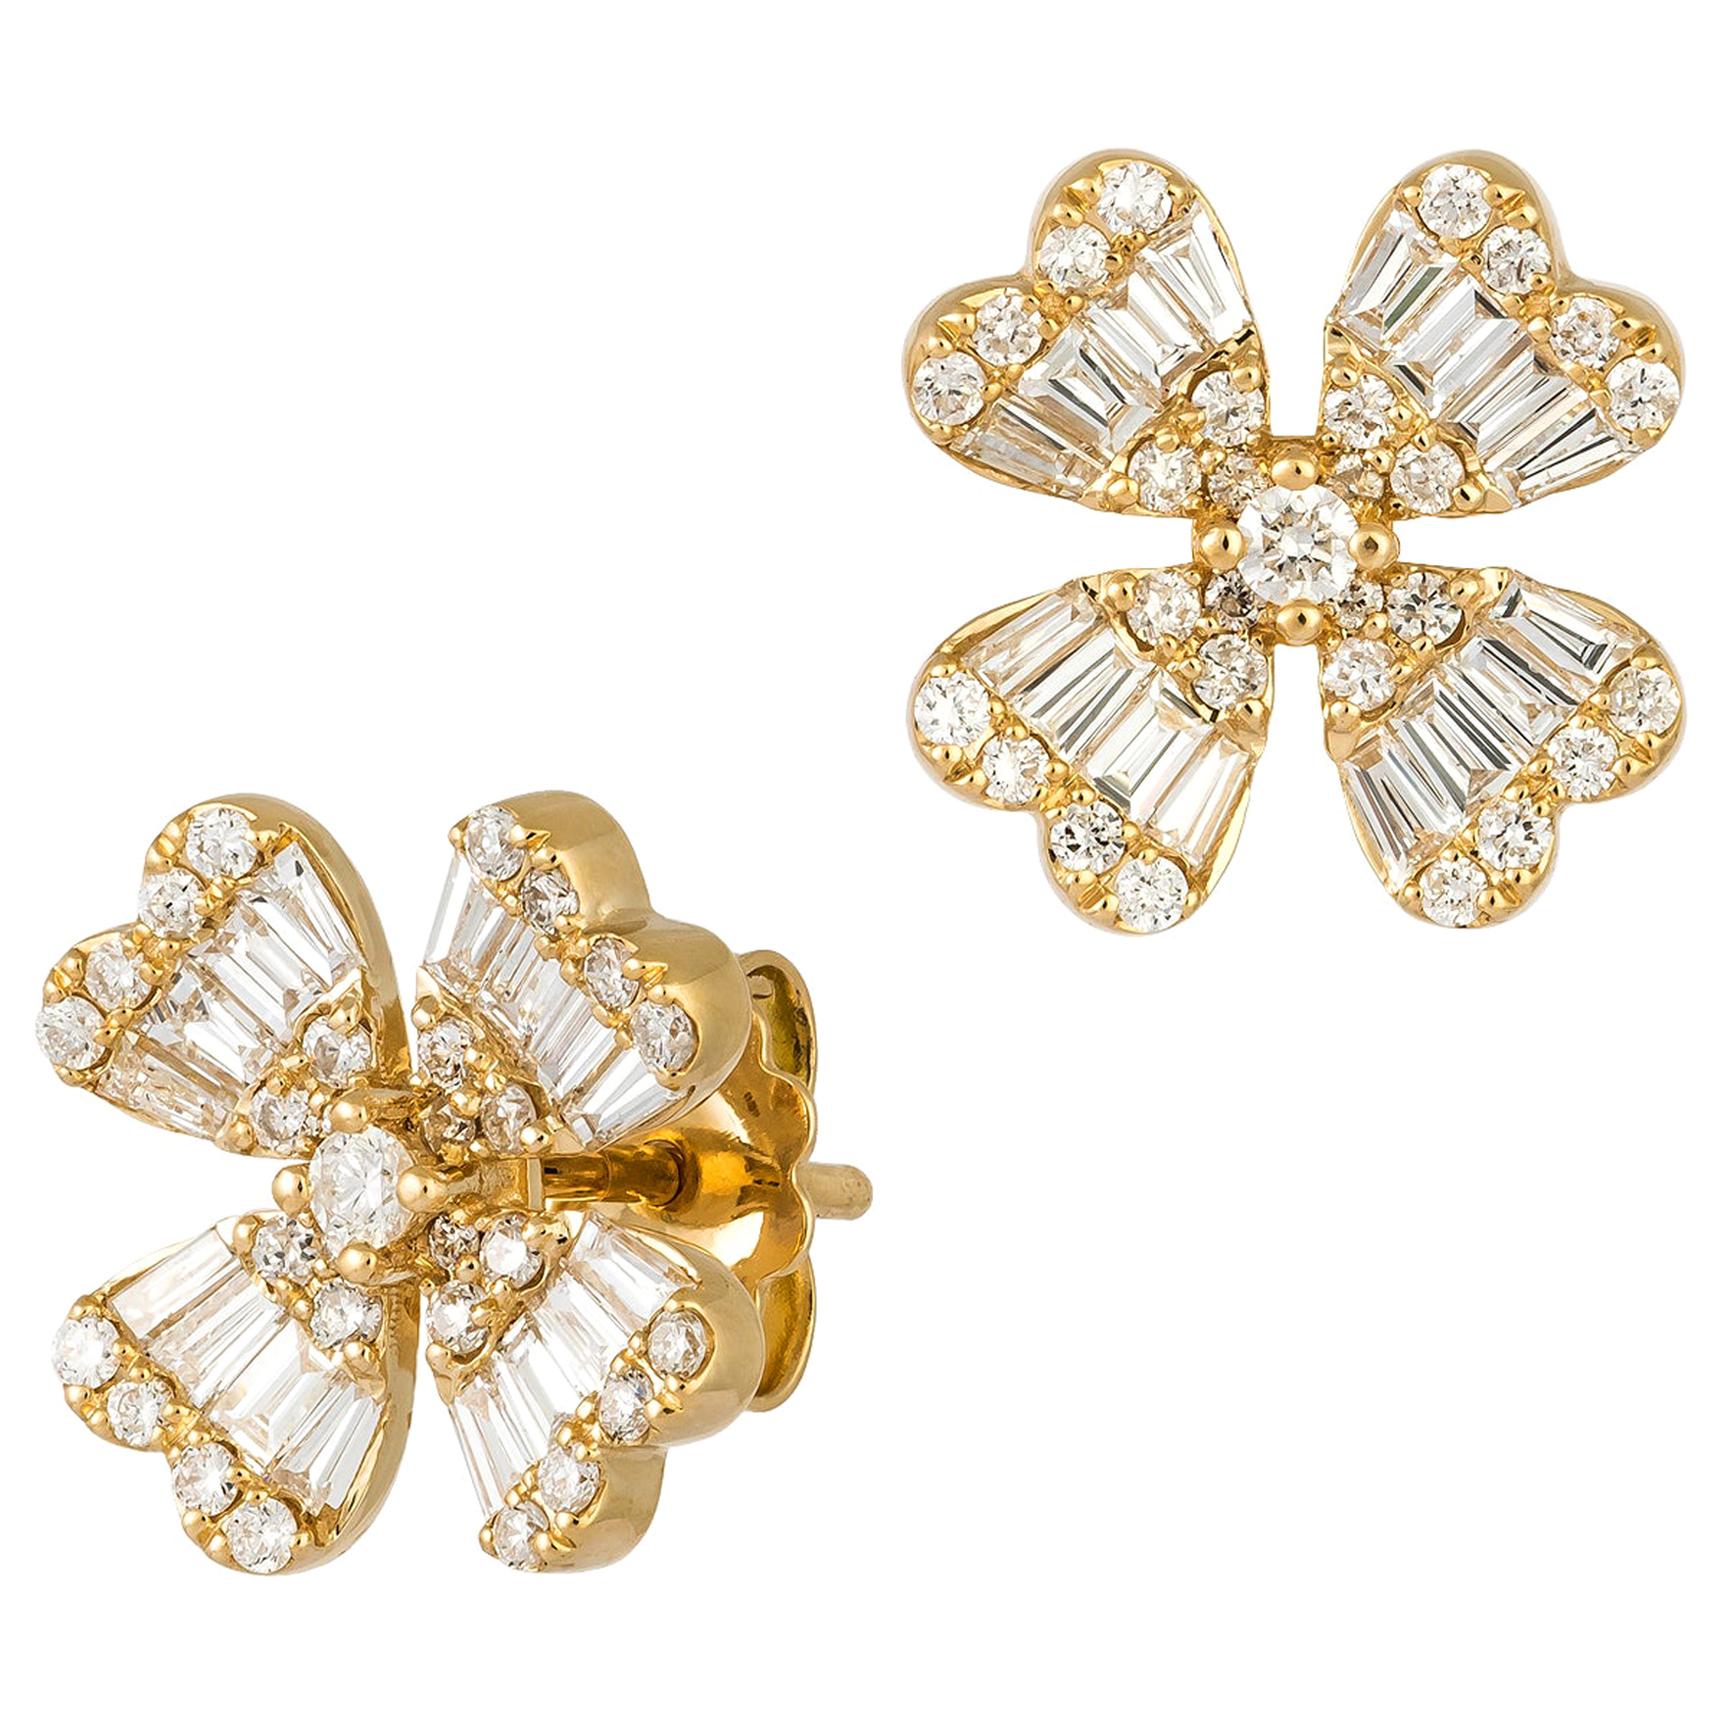 Modern White Pearl White Diamond White Gold 18 Karat Earrings For Sale ...